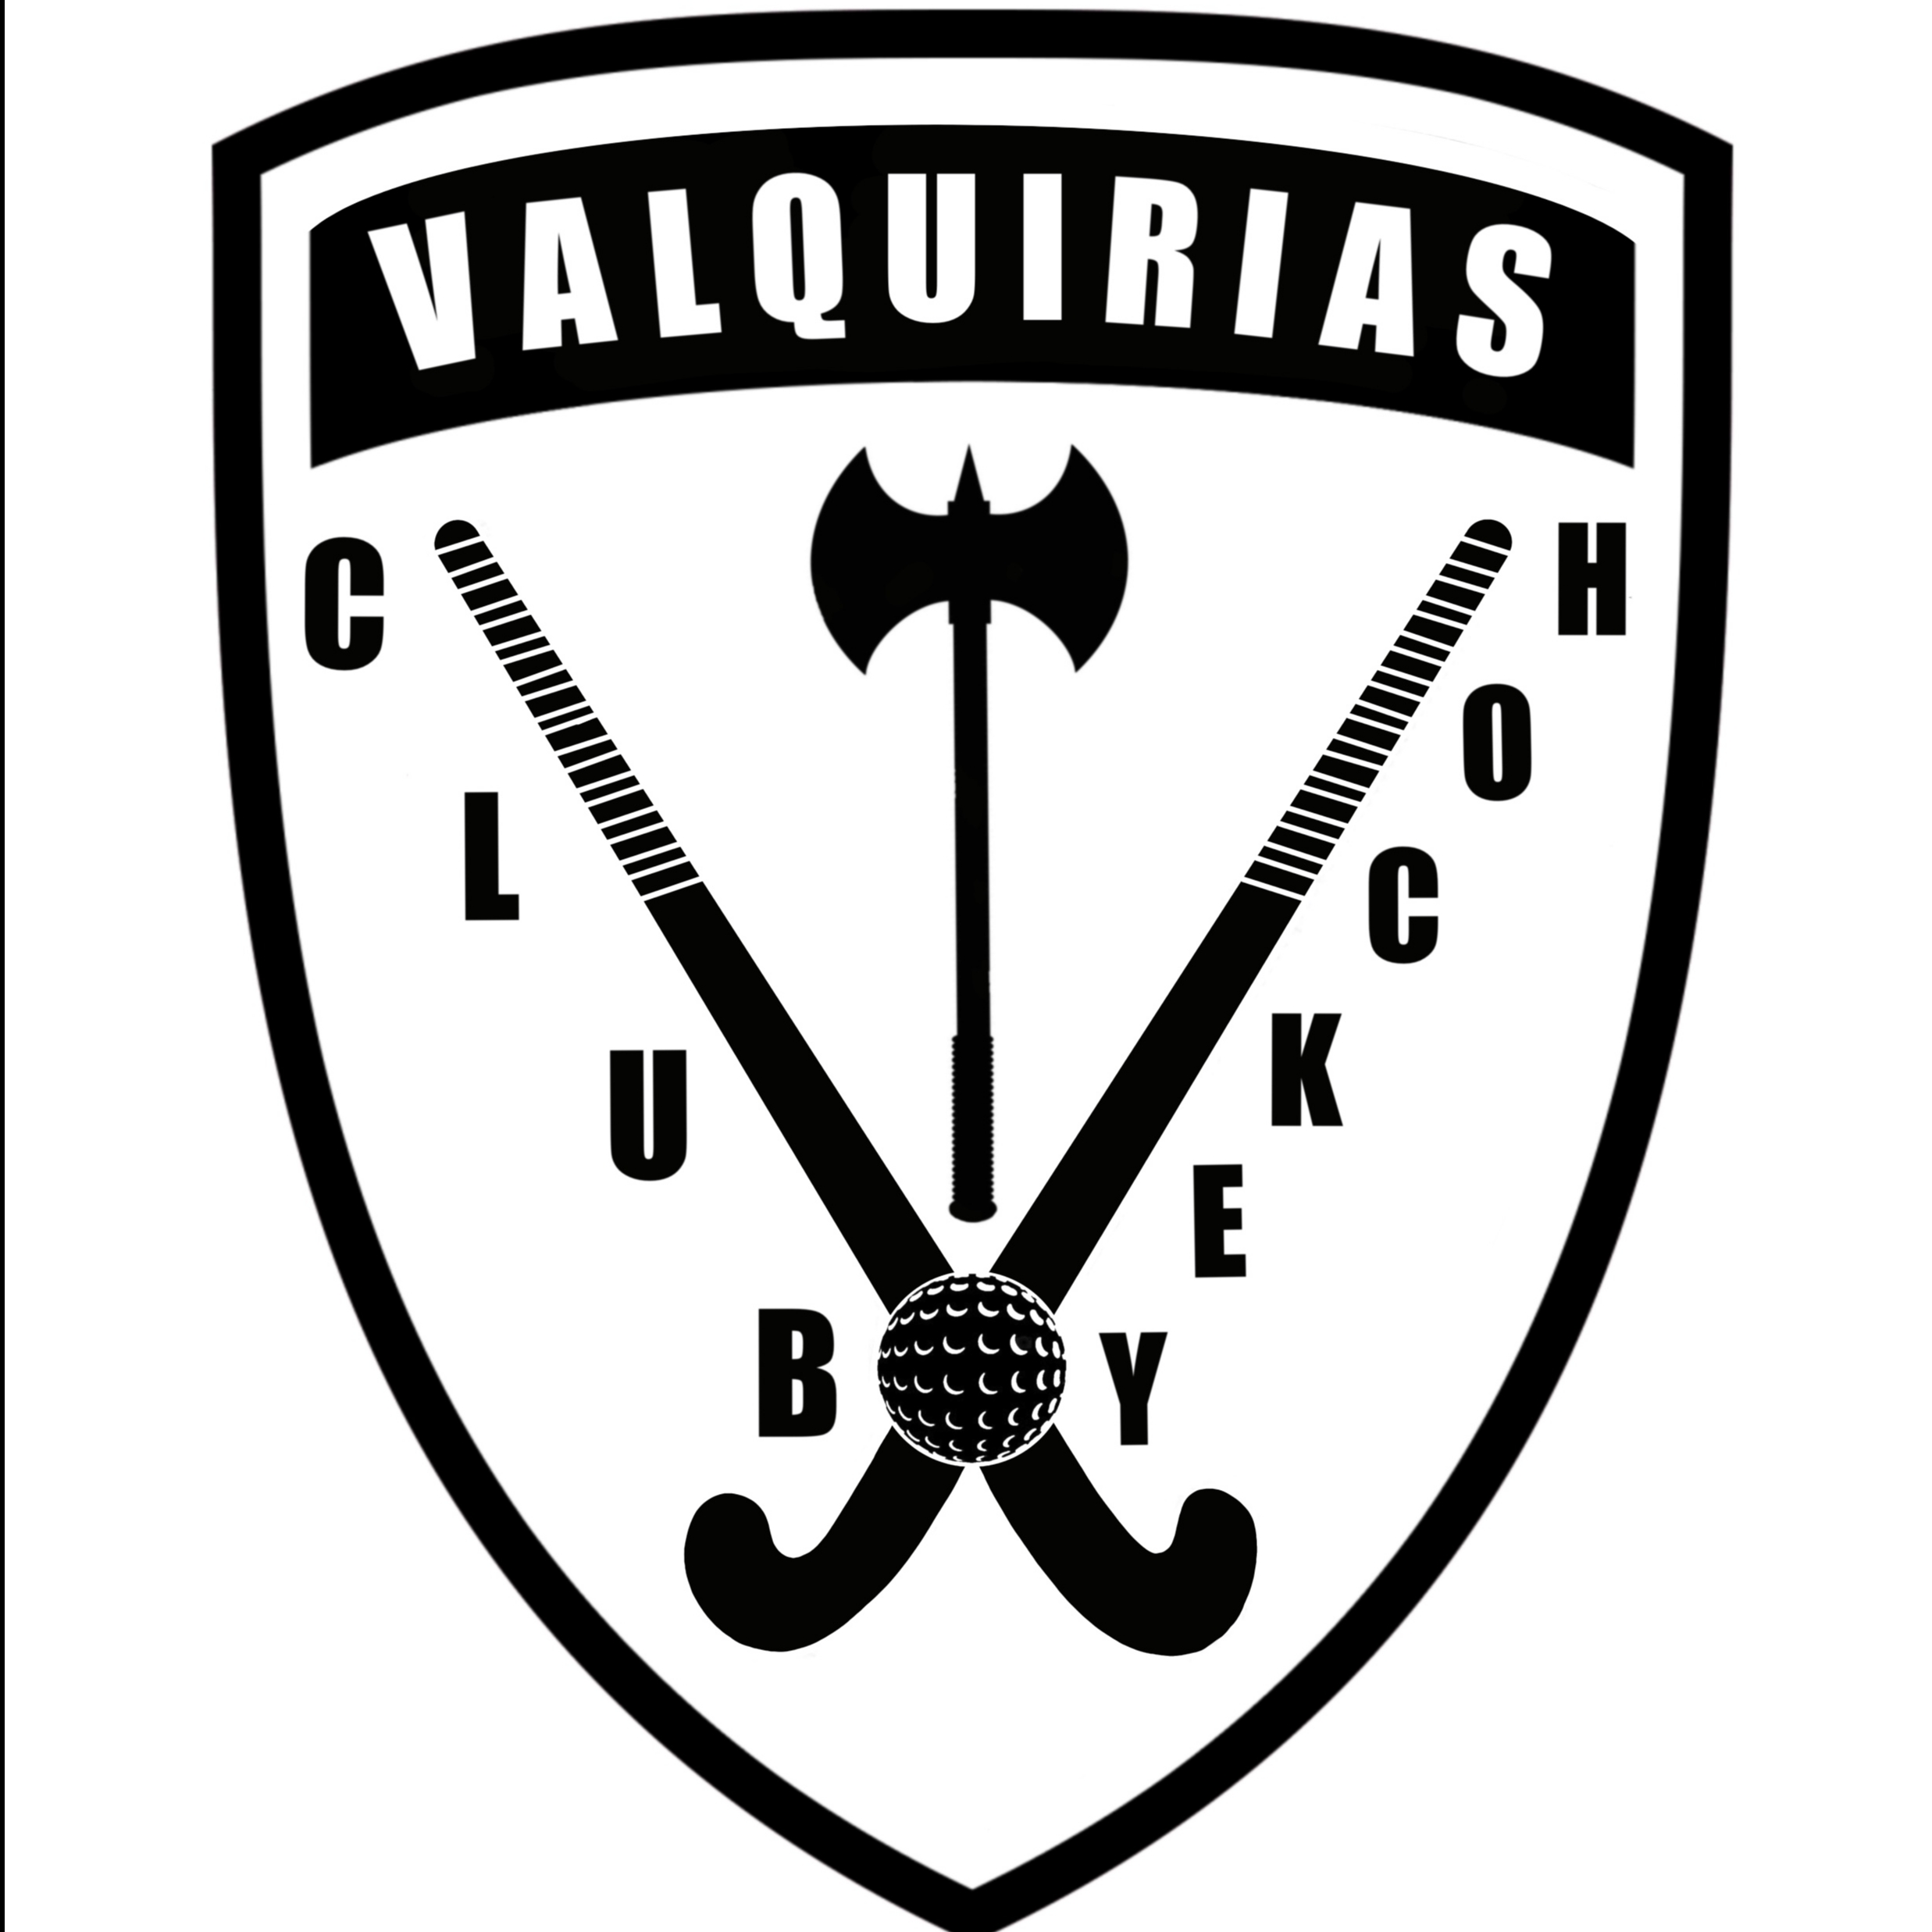 C.H. VALQUIRIAS